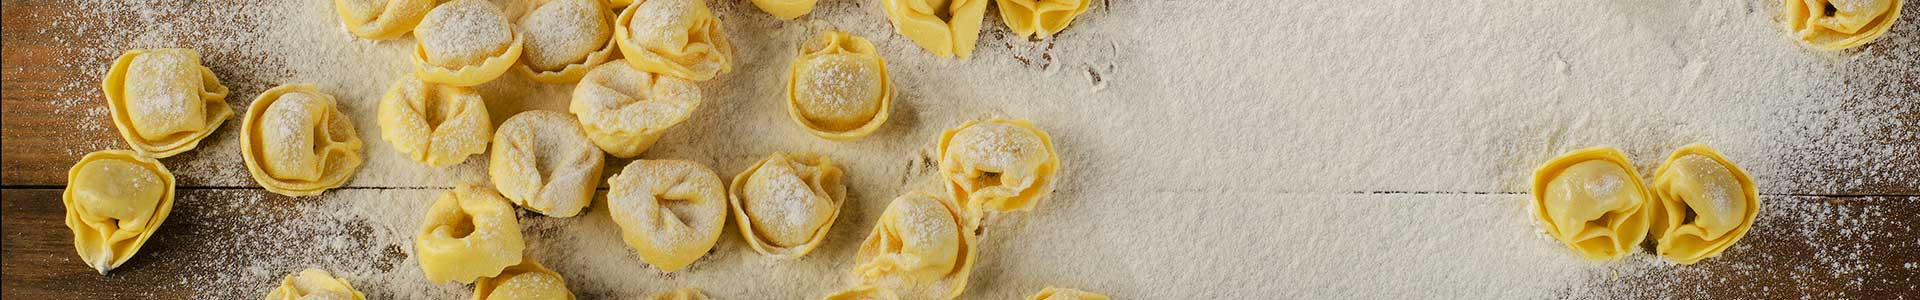 maquinas profesionales para pasta fresca | maquinas para hacer pasta fresca | mejor maquina pasta